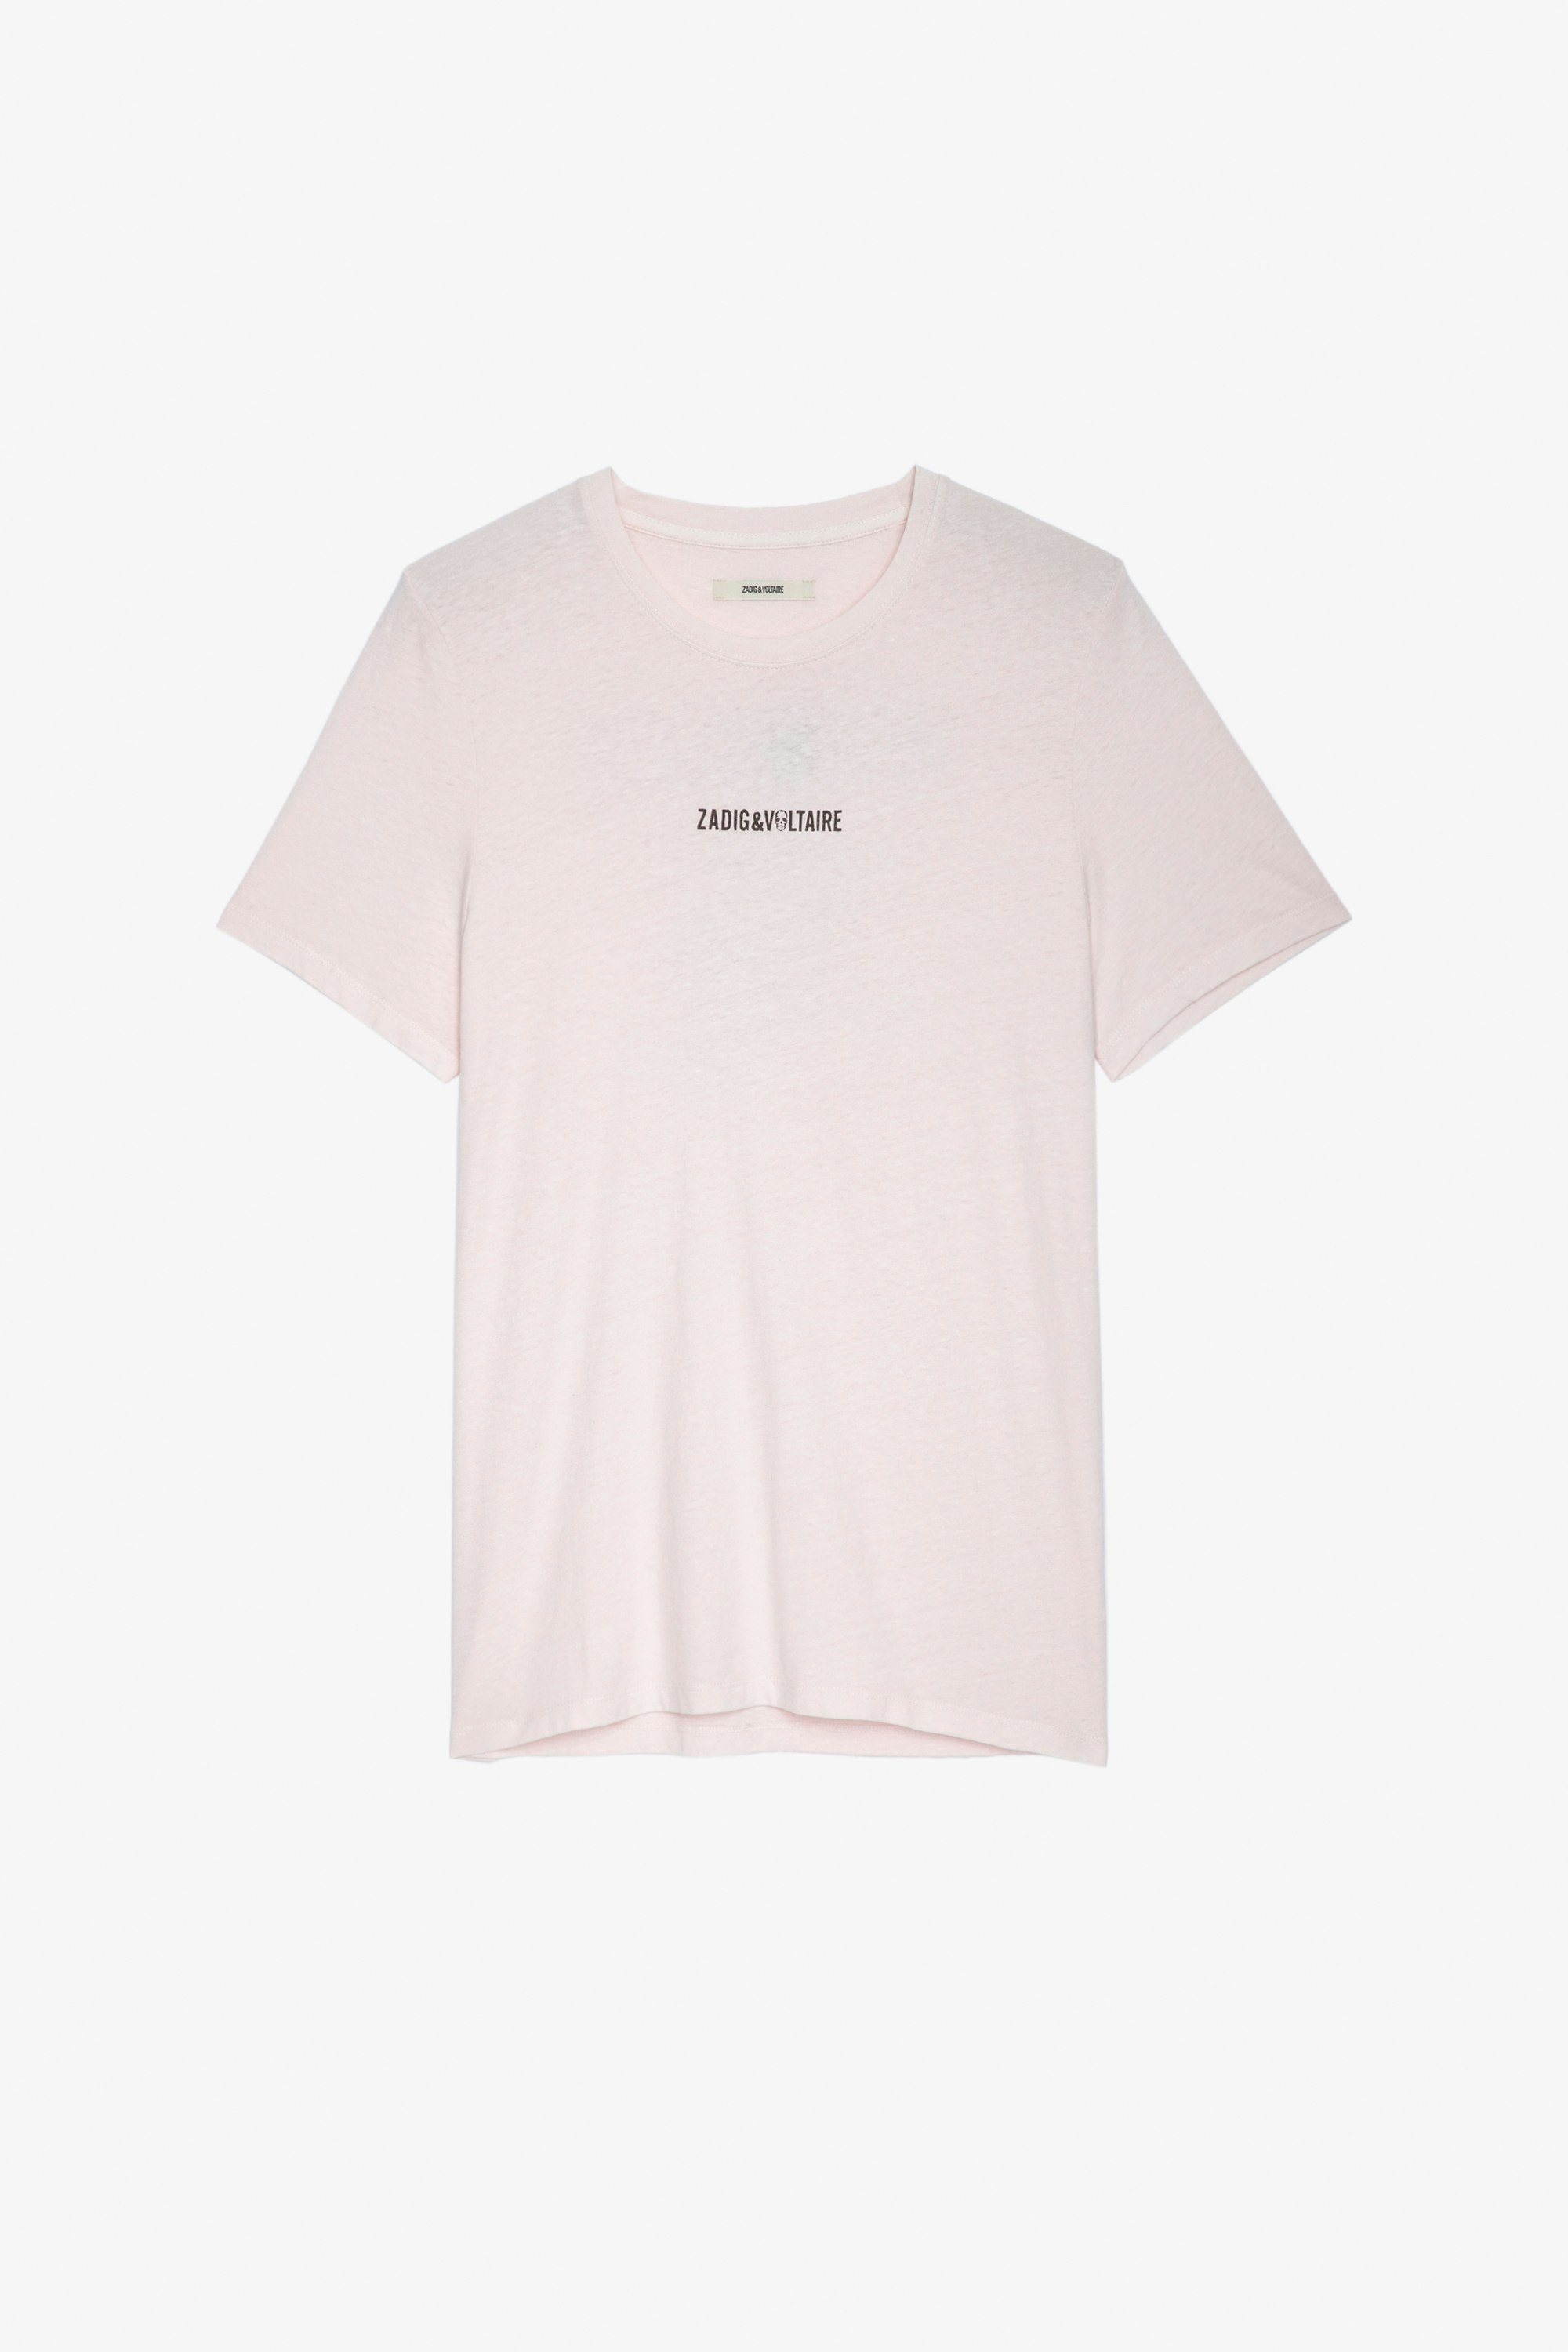 T-shirt Ted T-shirt en coton rose pâle orné d'une signature ZV devant et du message "Hédoniste" au dos Homme